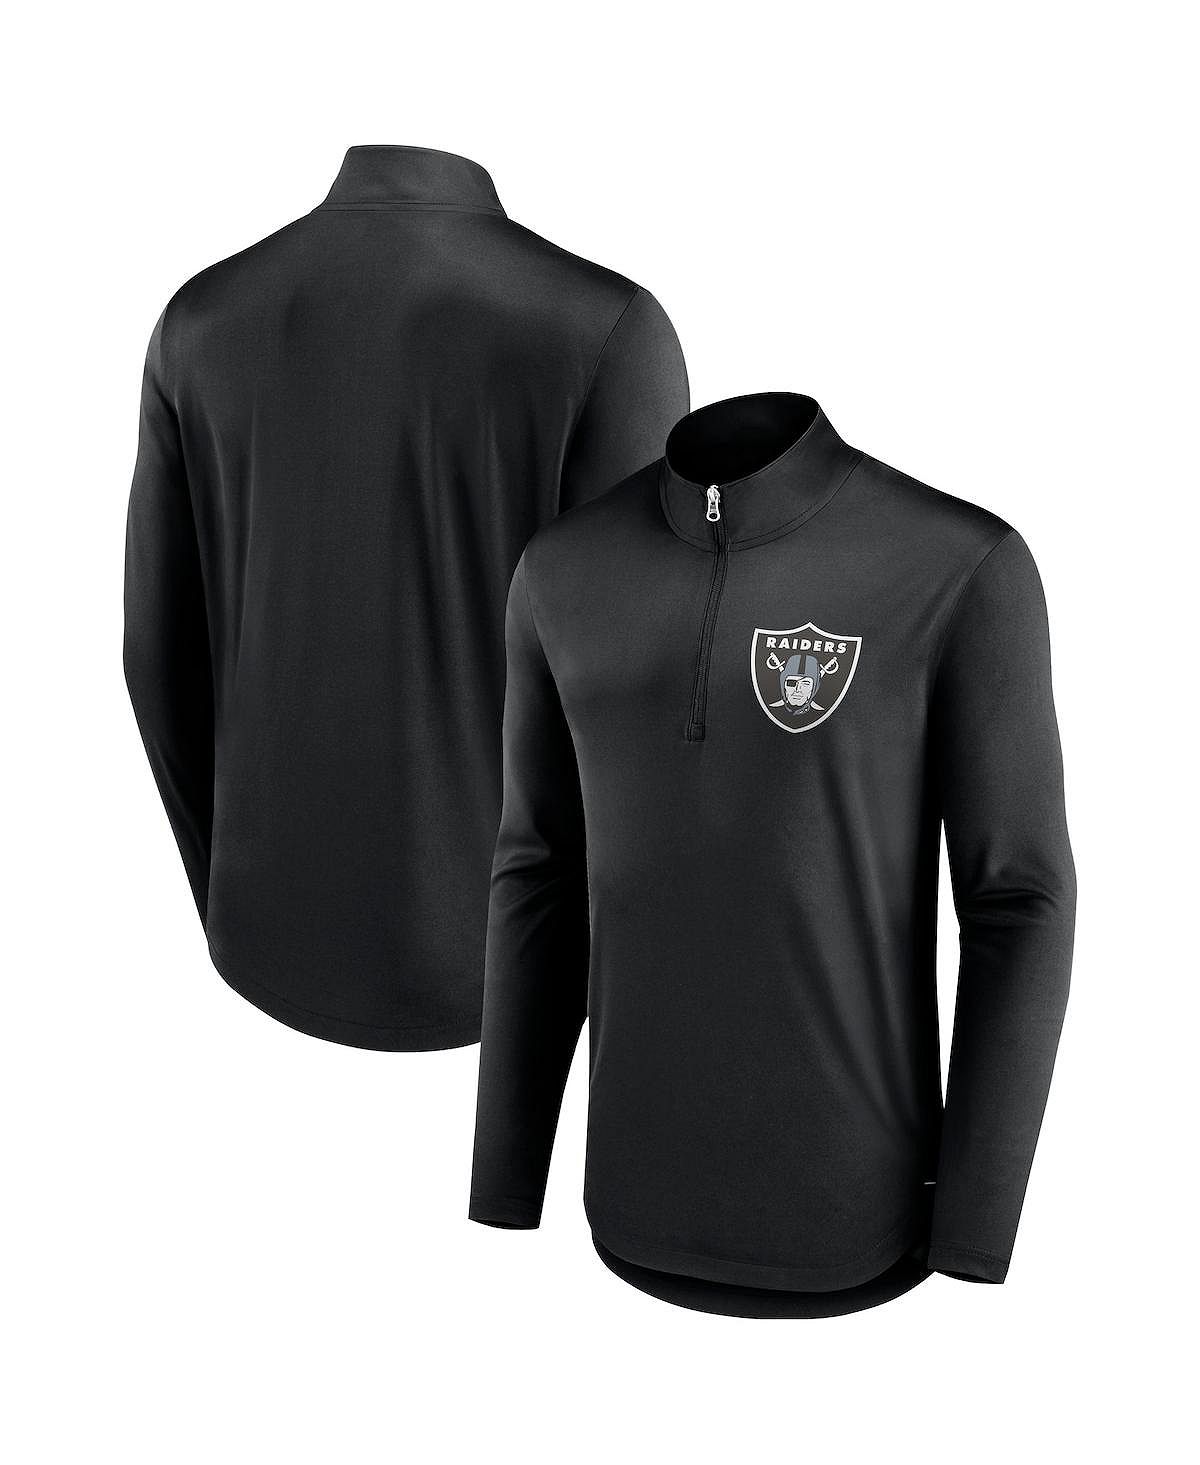 Мужская черная фирменная футболка с молнией четверть четверти Las Vegas Raiders Tough Minded Fanatics cool spots las vegas